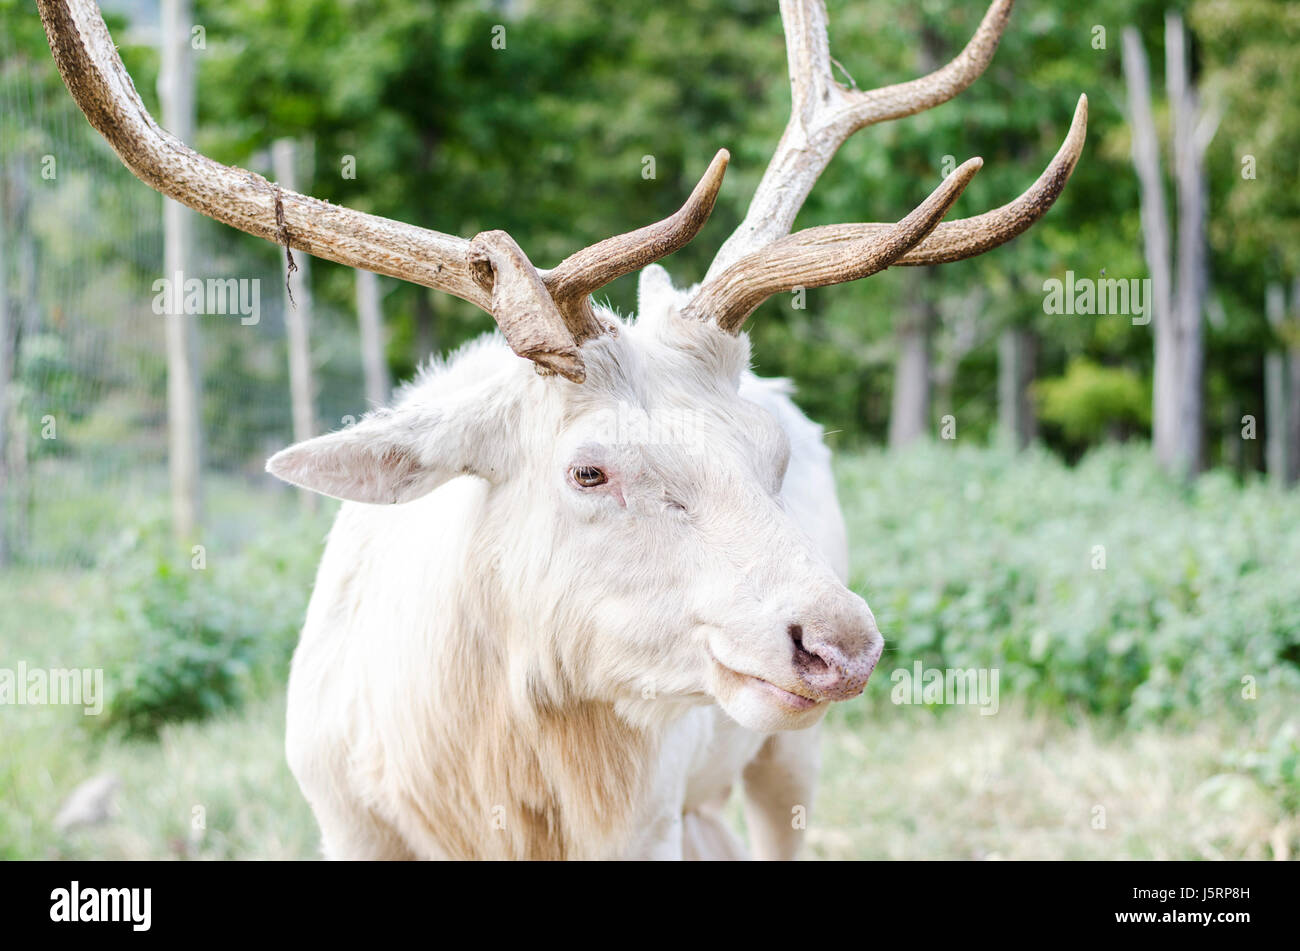 Rare white elk Stock Photo